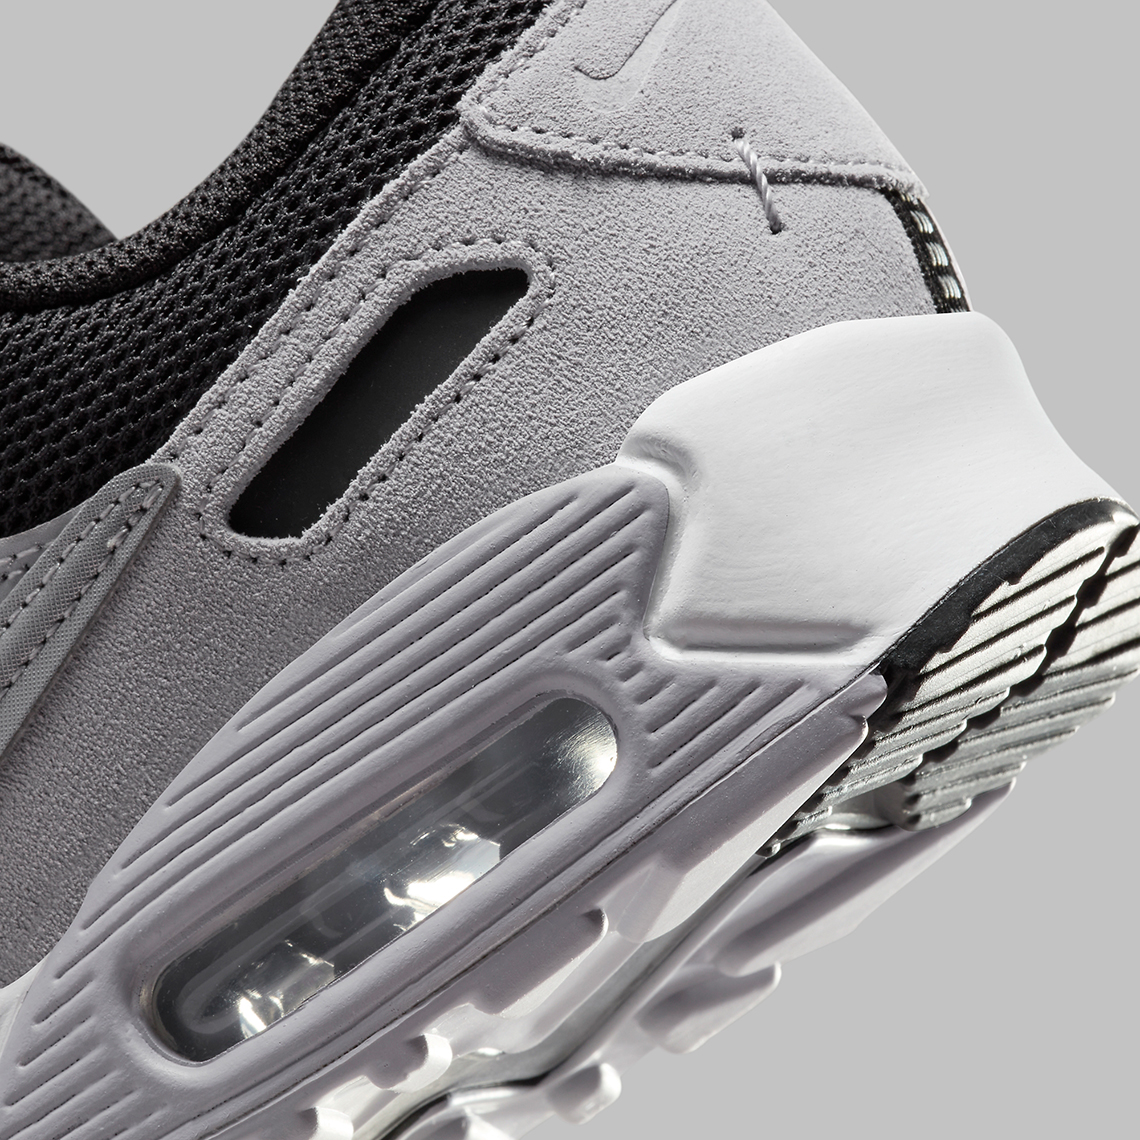 Nike Air Max 90 Futura “Black/Grey” FN7777-001 | SneakerNews.com